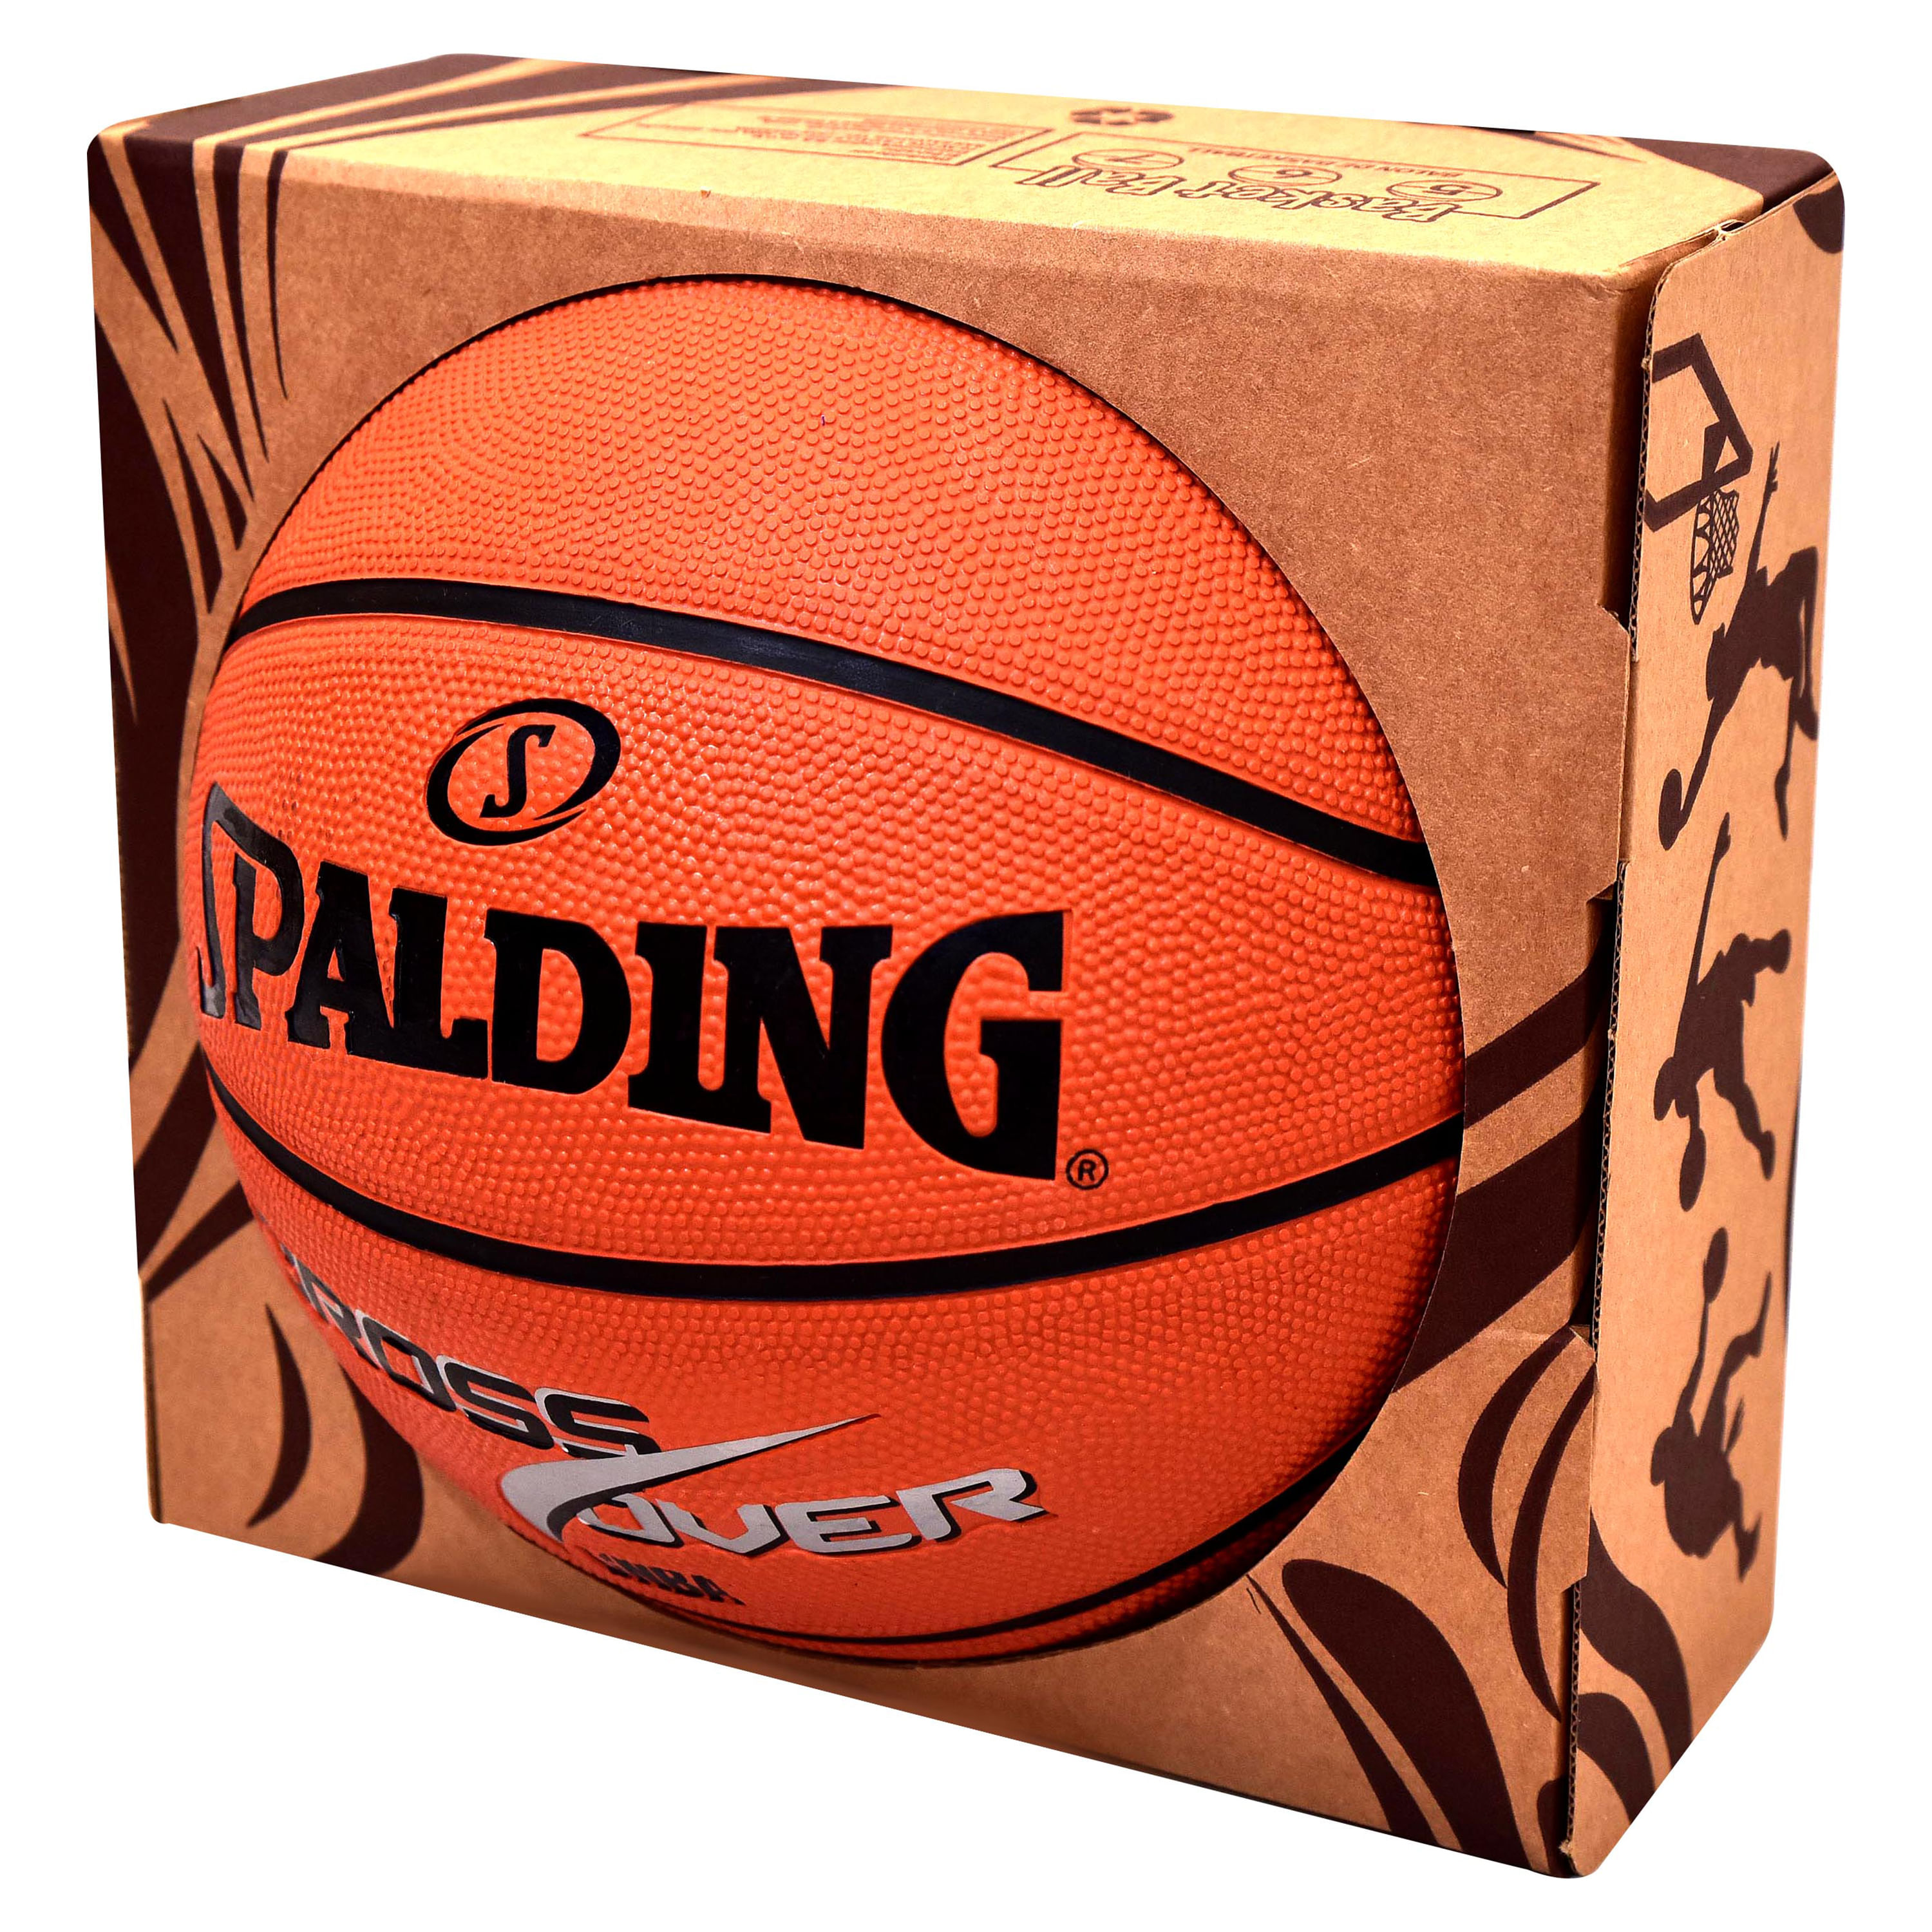 Ballon de basket Spalding Slam Dunk